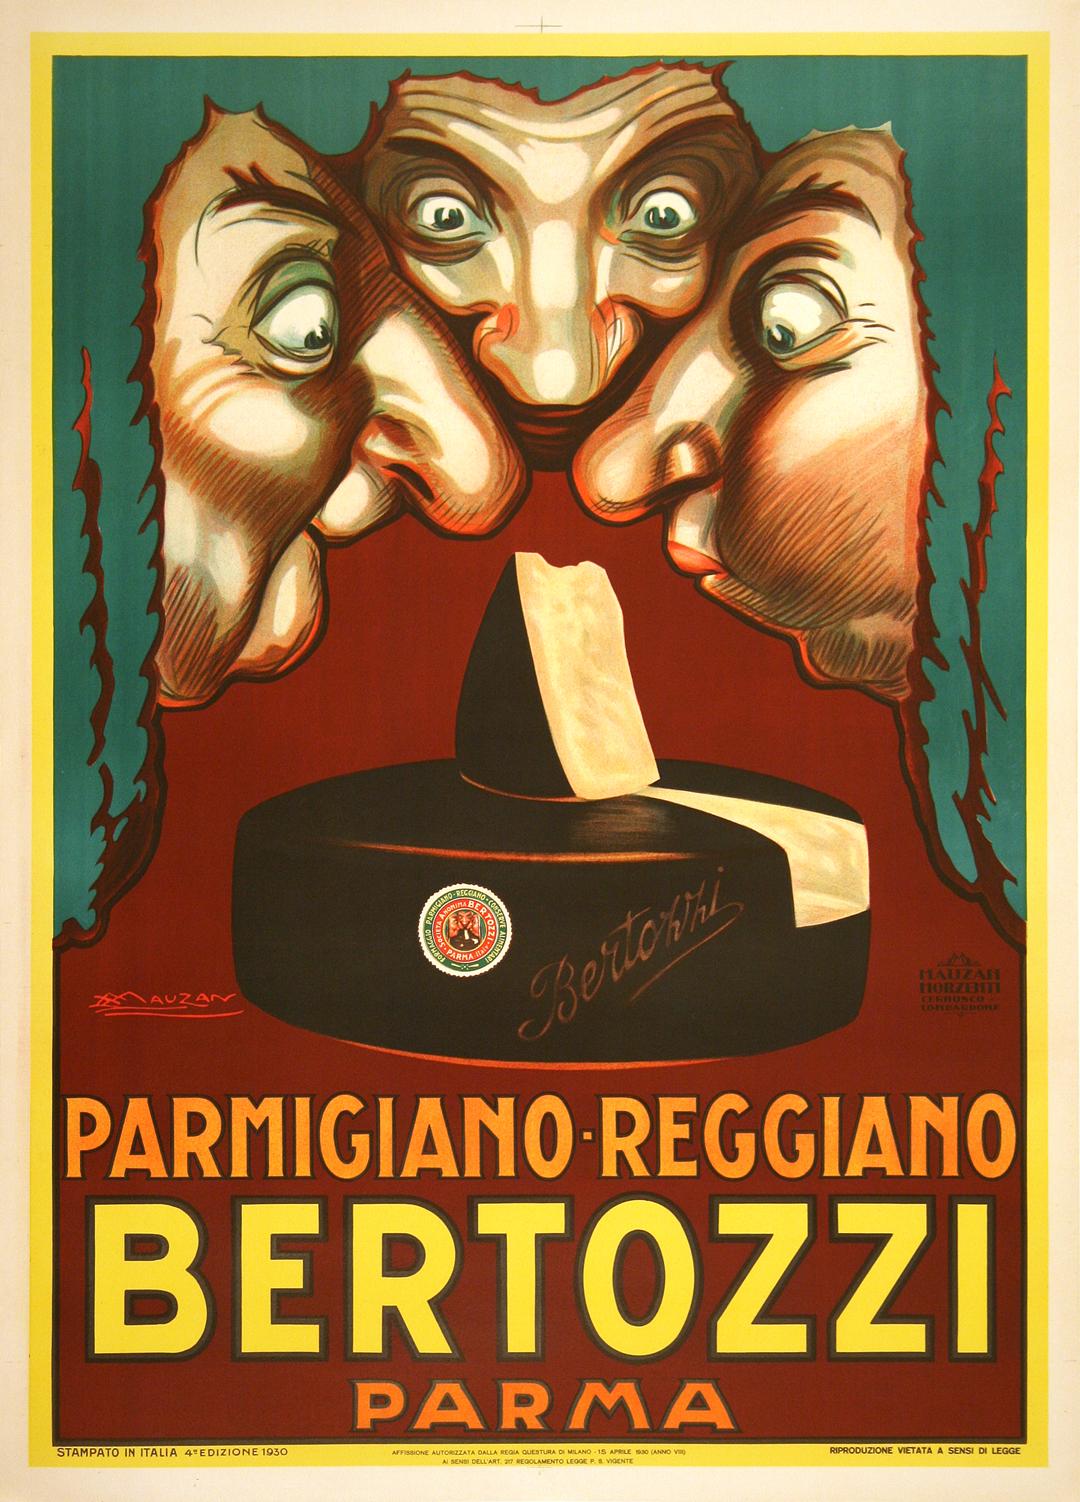 Achille Mauzan a créé cette affiche vintage en 1924 pour faire la publicité de la marque de fromages Bertozzi. Trois juges aux visages expressifs se penchent sur le fromage, nous donnant une idée de l'odeur parfumée et invitante du produit. Achille